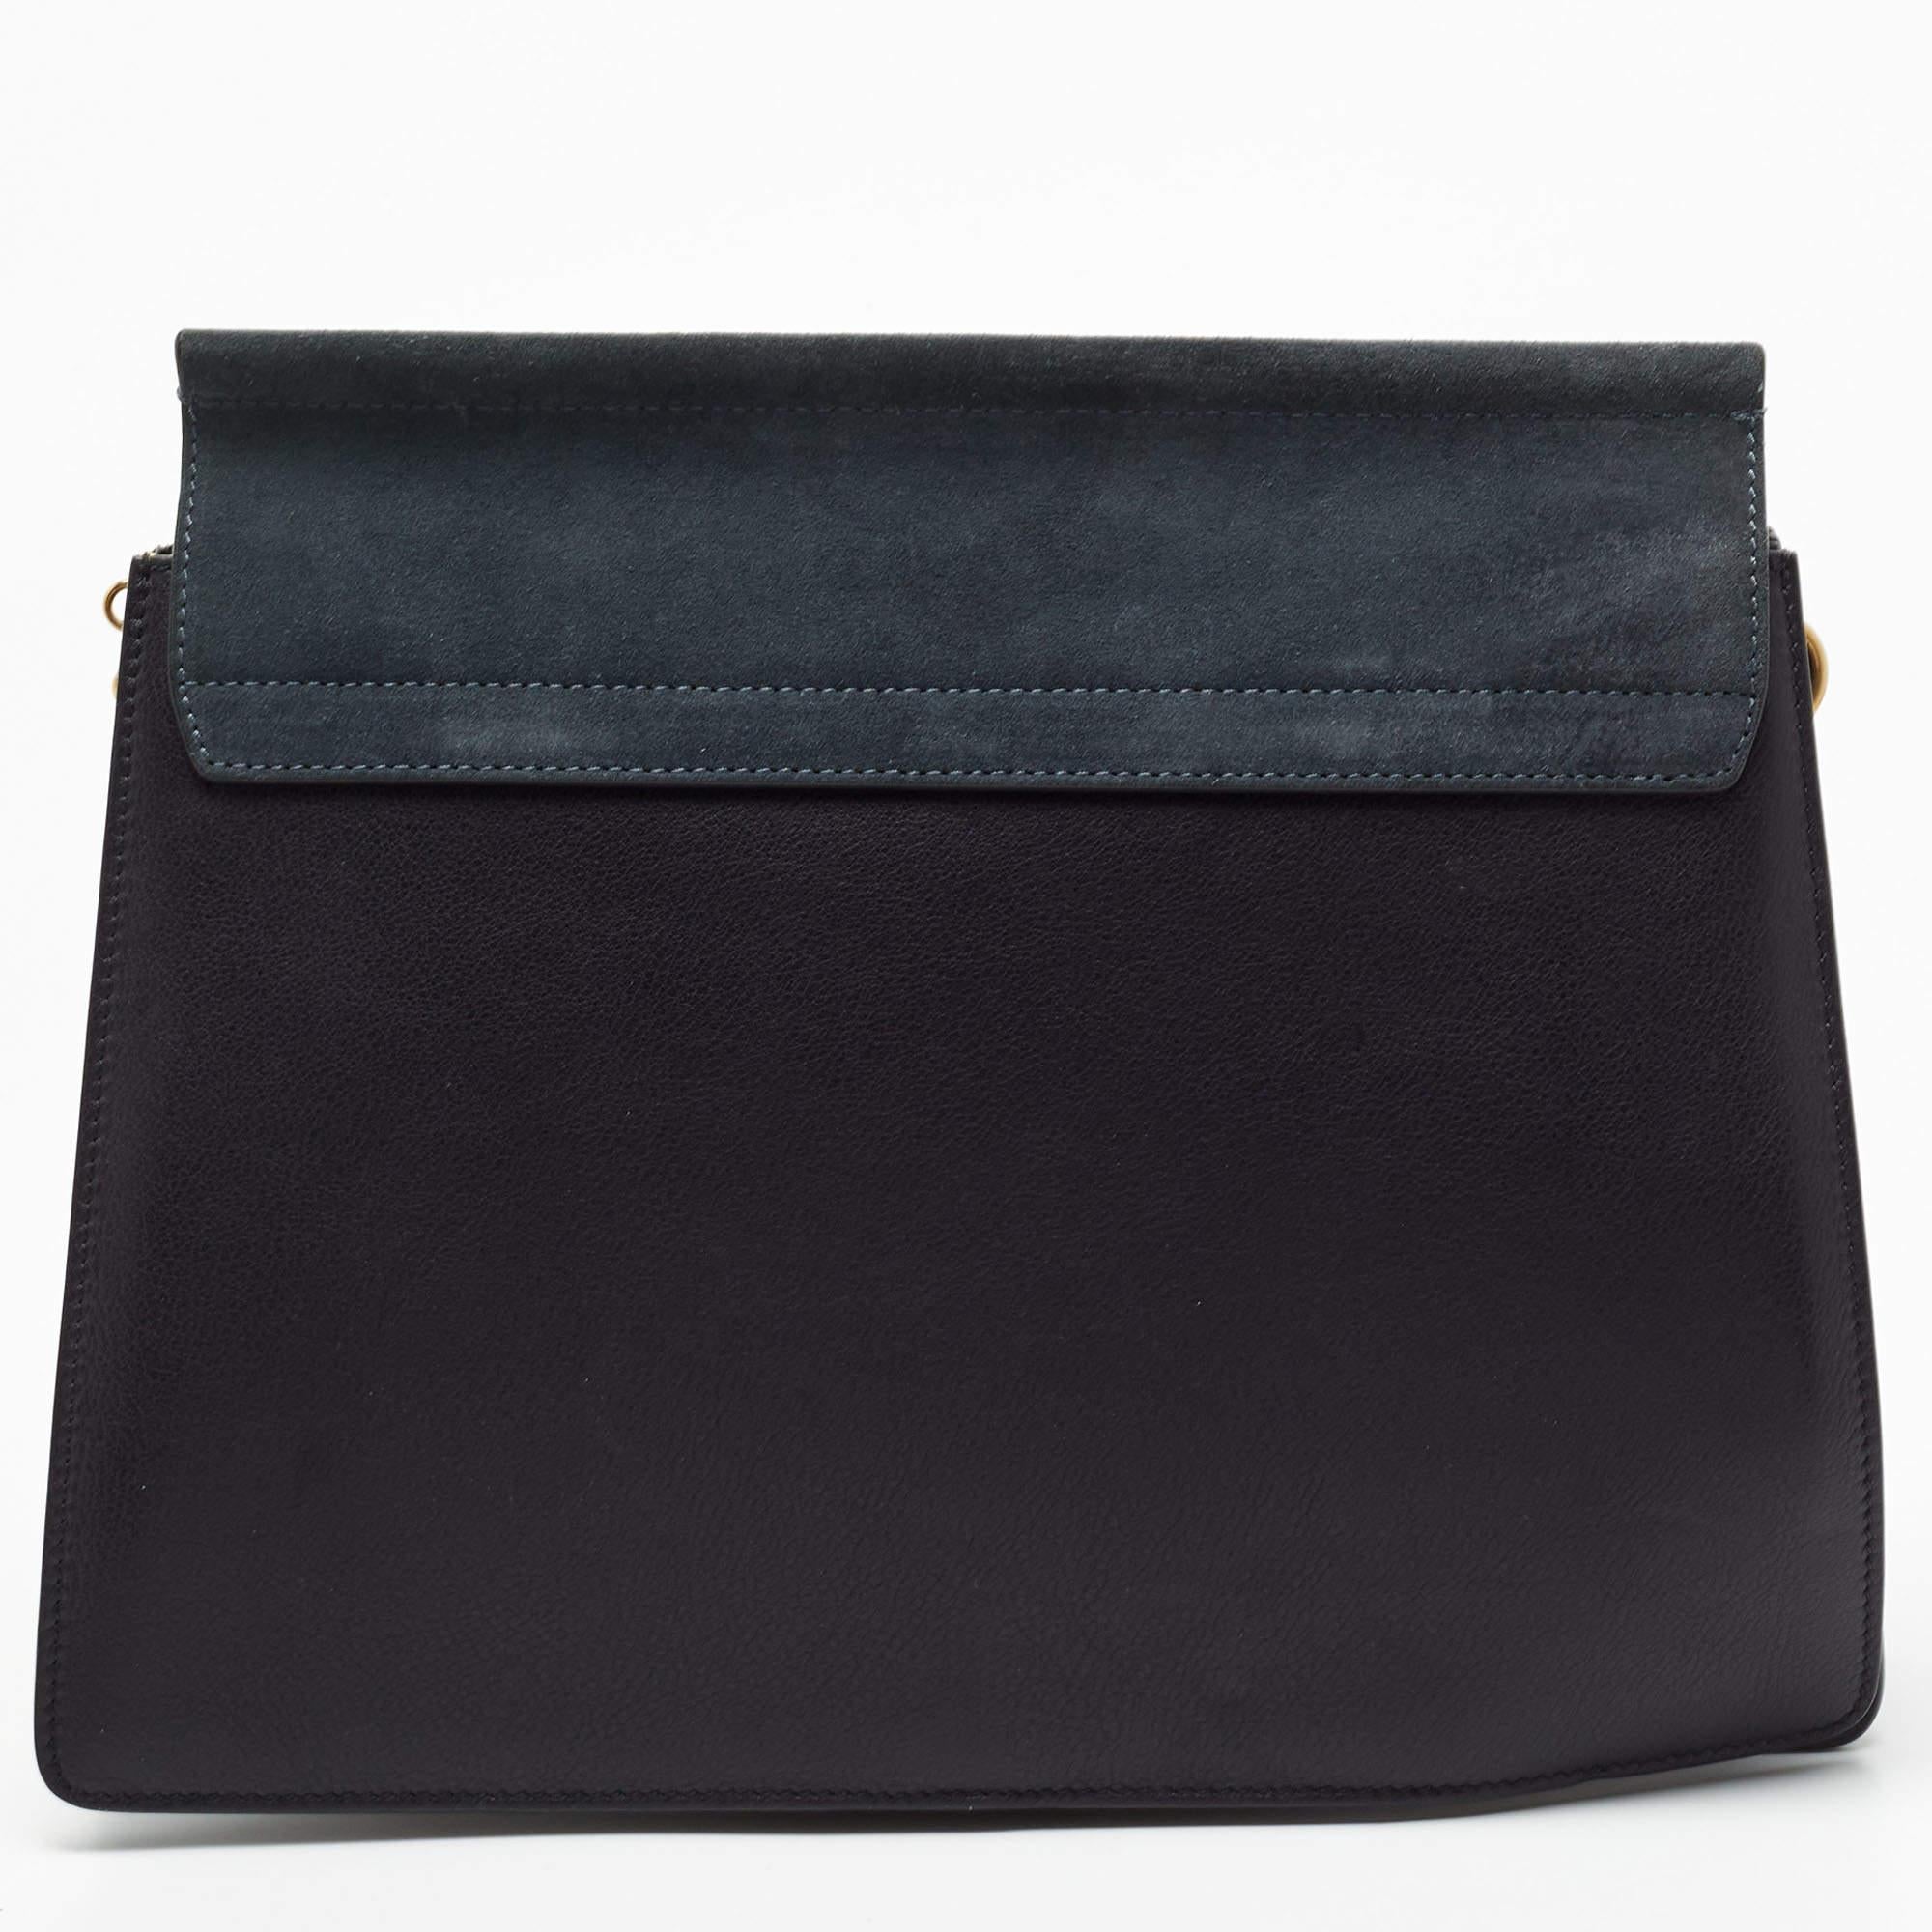 Chloe Black/Teal Leather and Suede Medium Studded Faye Shoulder Bag 10